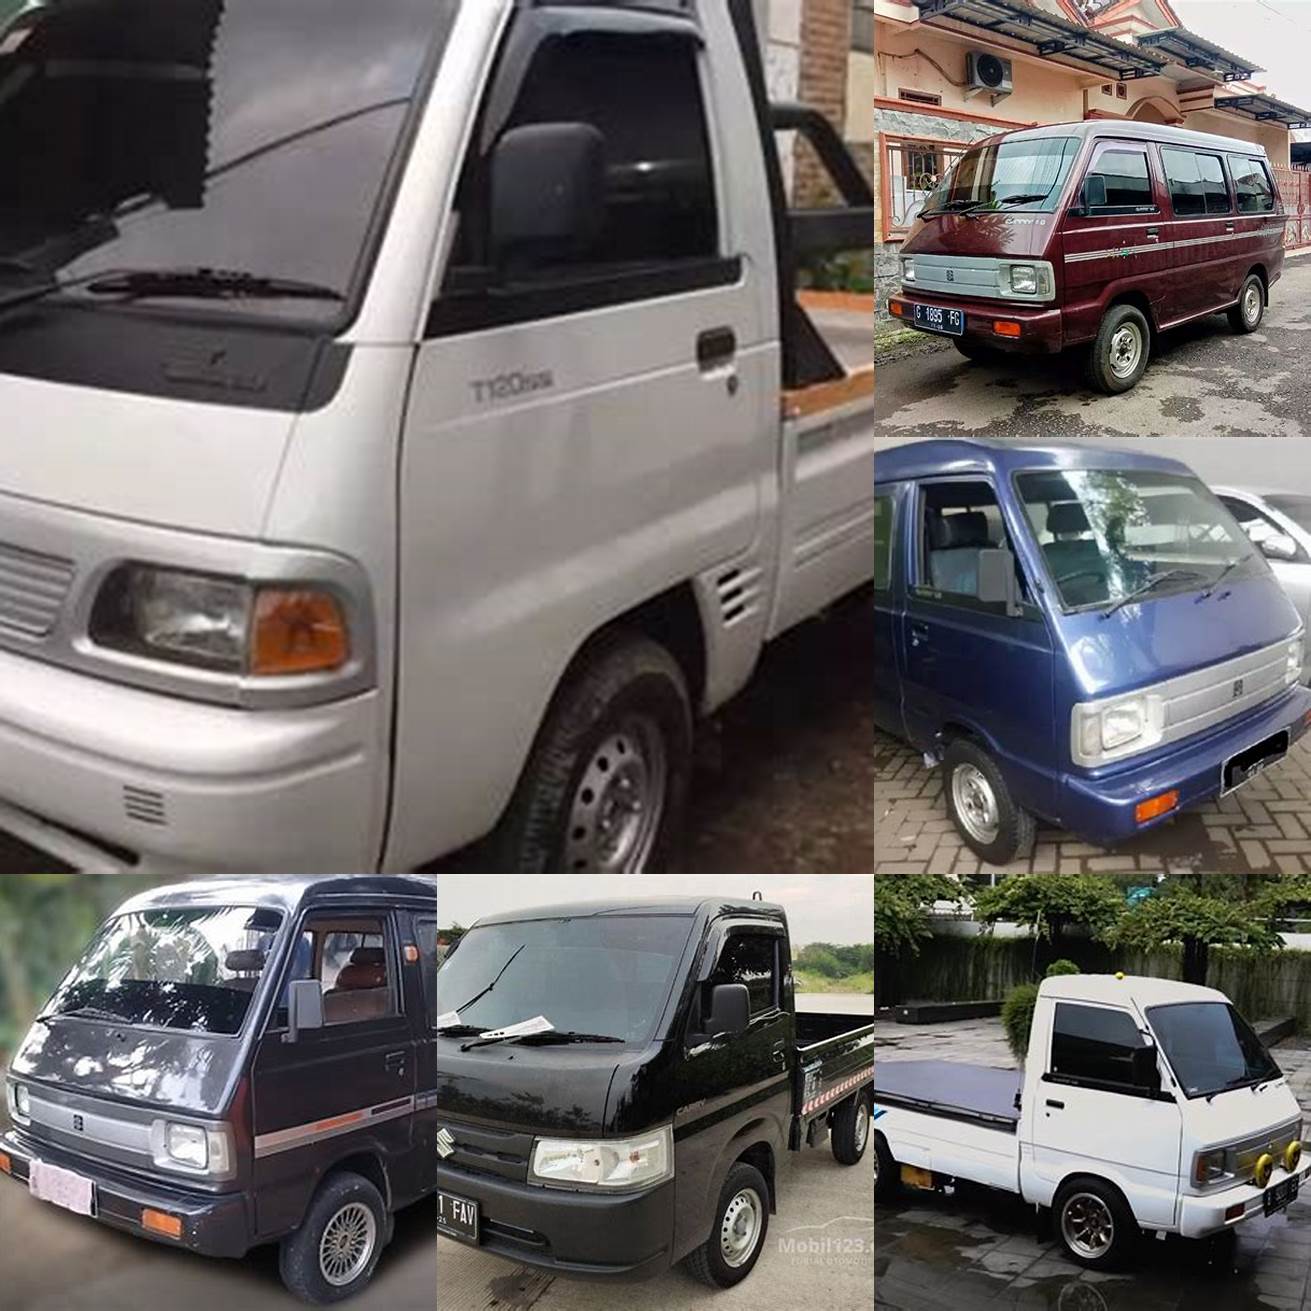 Harga mobil carry bekas tahun 1995 modifikasi berkisar antara 50-100 juta rupiah